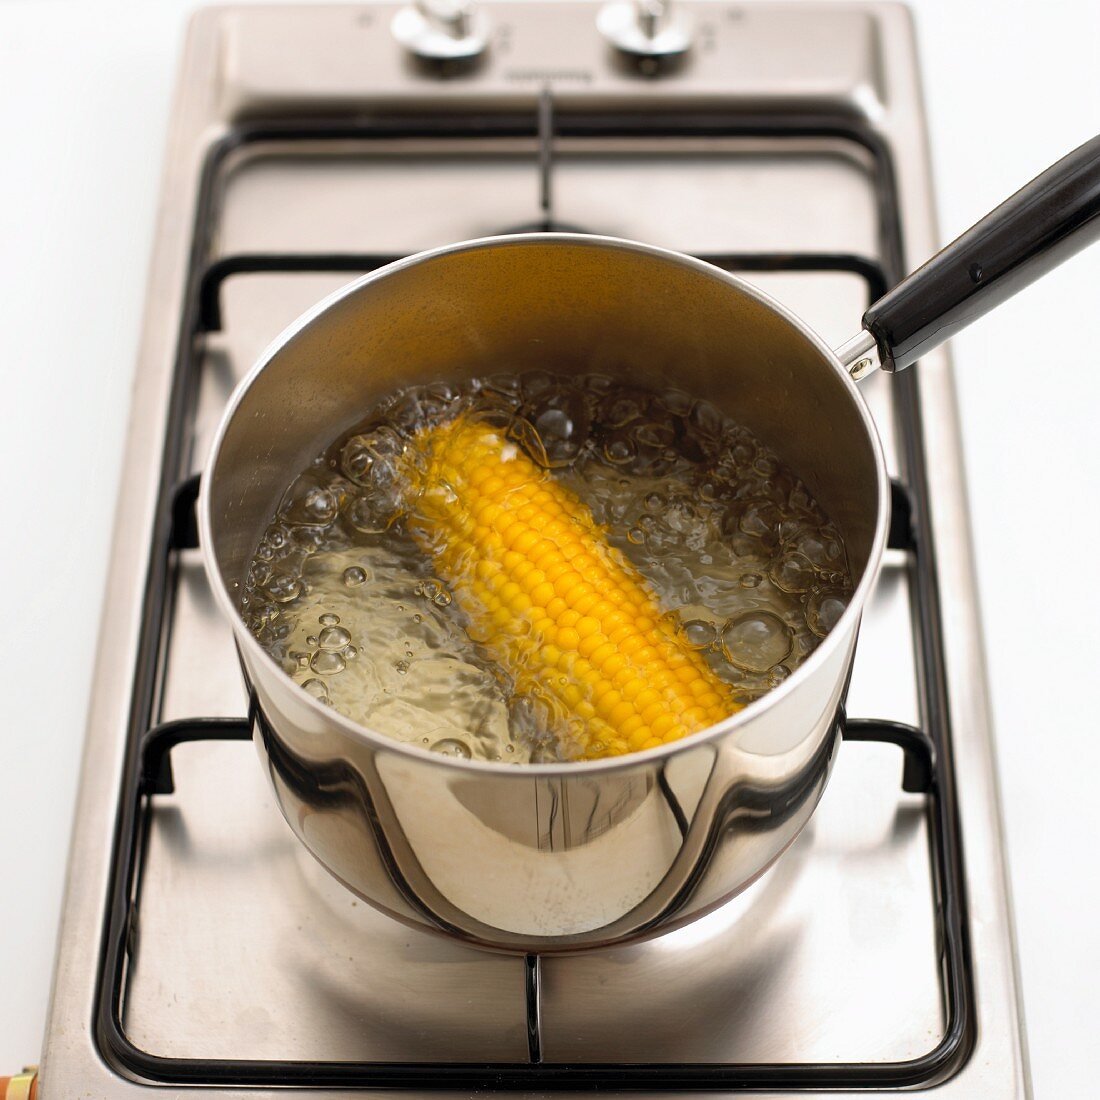 Maiskolben in Wasser kochen